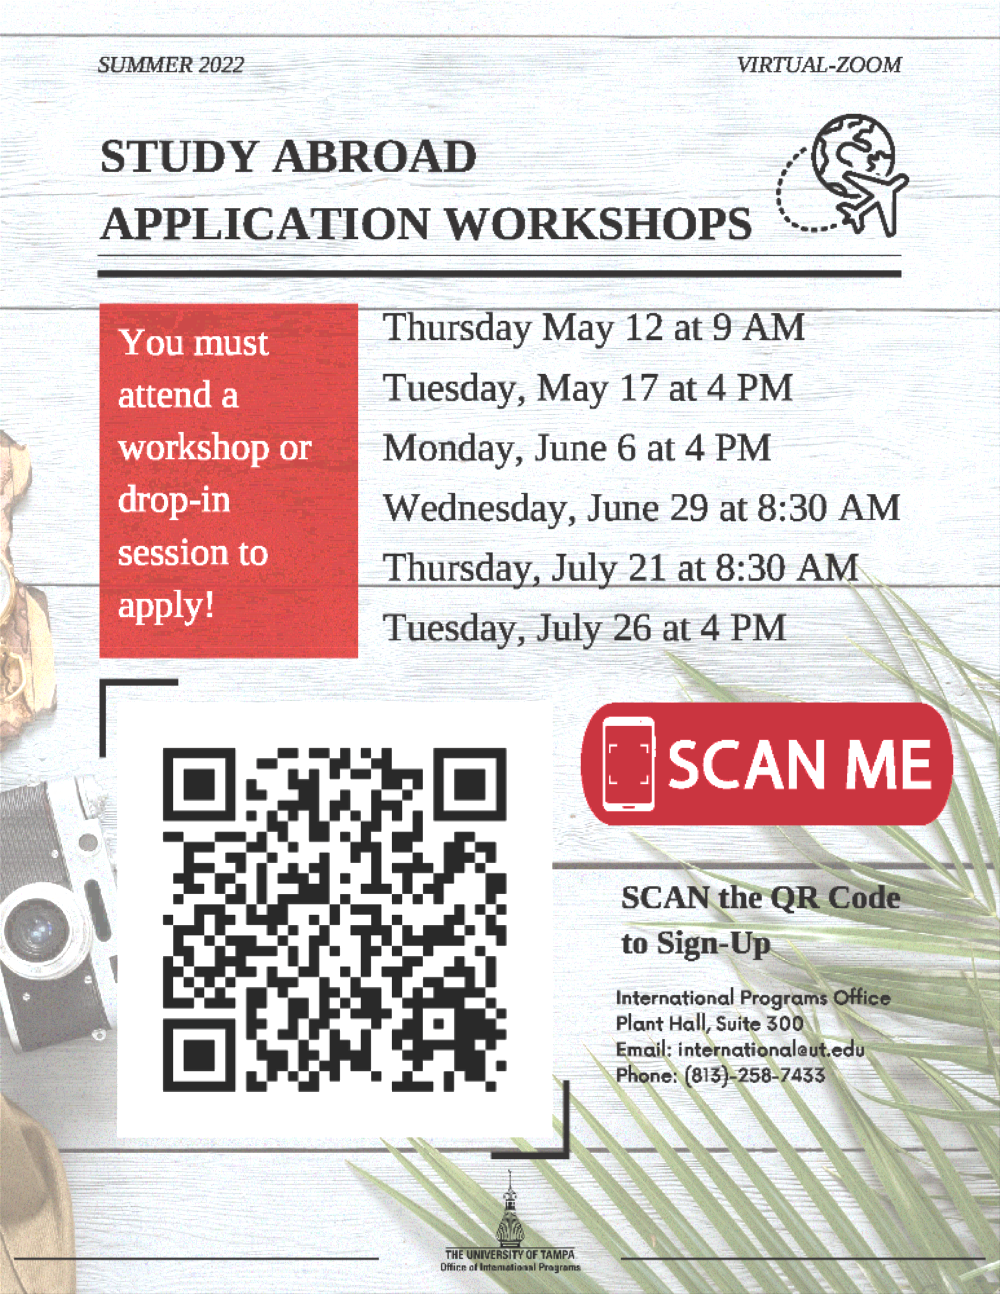 Summer Application Workshops